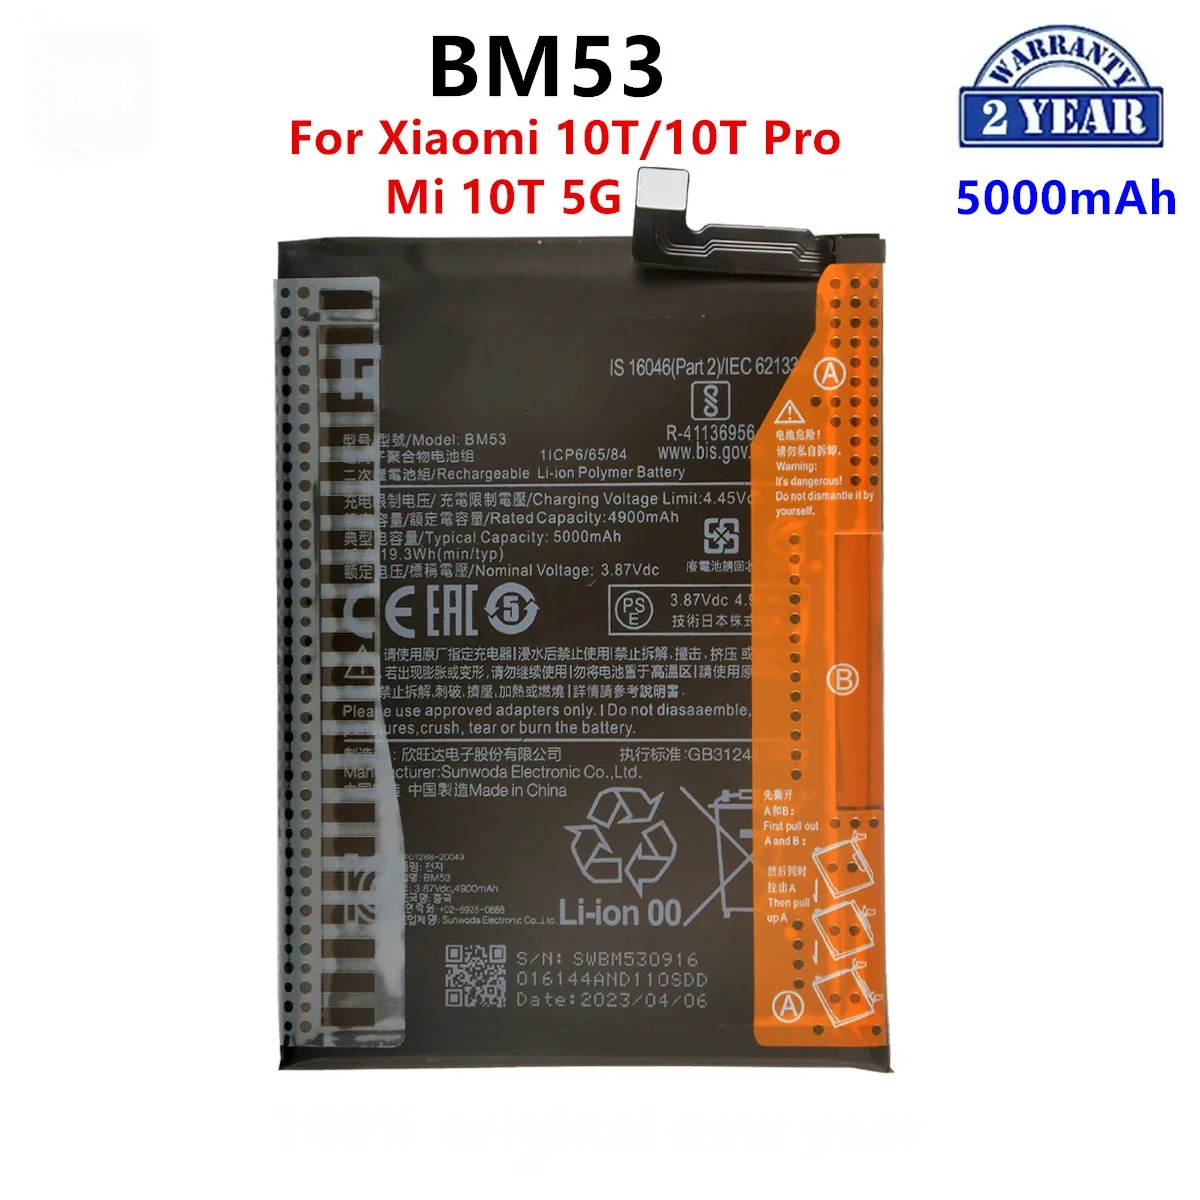 

Оригинальный аккумулятор BM53 100% мАч для Xiaomi 10T/10T Pro/ Mi 10T